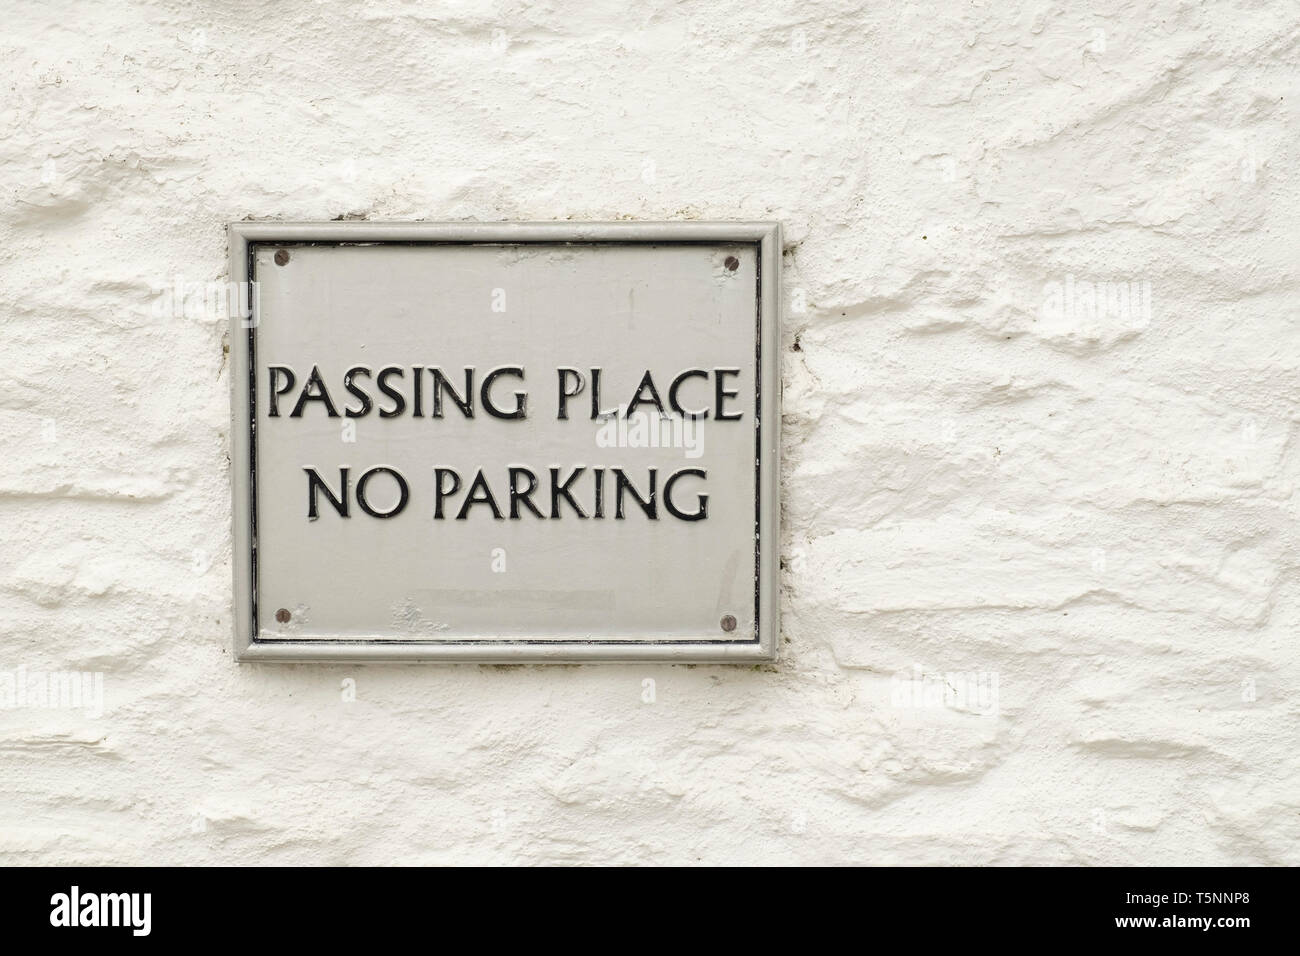 No parking sign et passant place signer, au mur dans village Durgan, Cornwall, Angleterre Banque D'Images